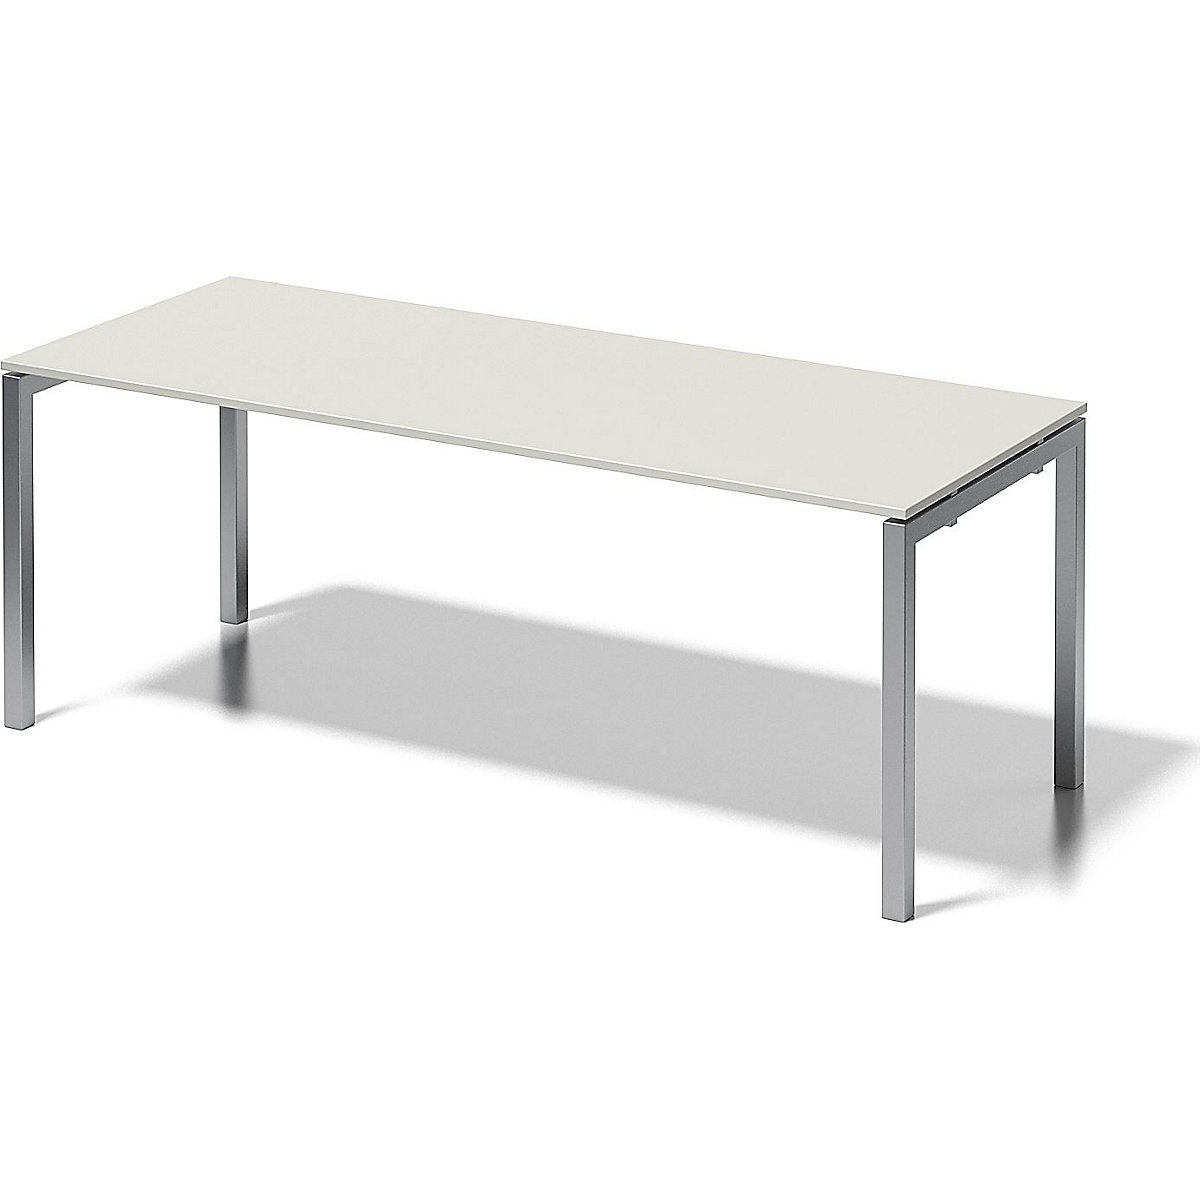 Písací stôl CITO, podstavec v tvare U – BISLEY, v x š x h 740 x 2000 x 800 mm, podstavec strieborná, doska stola šedobiela-6